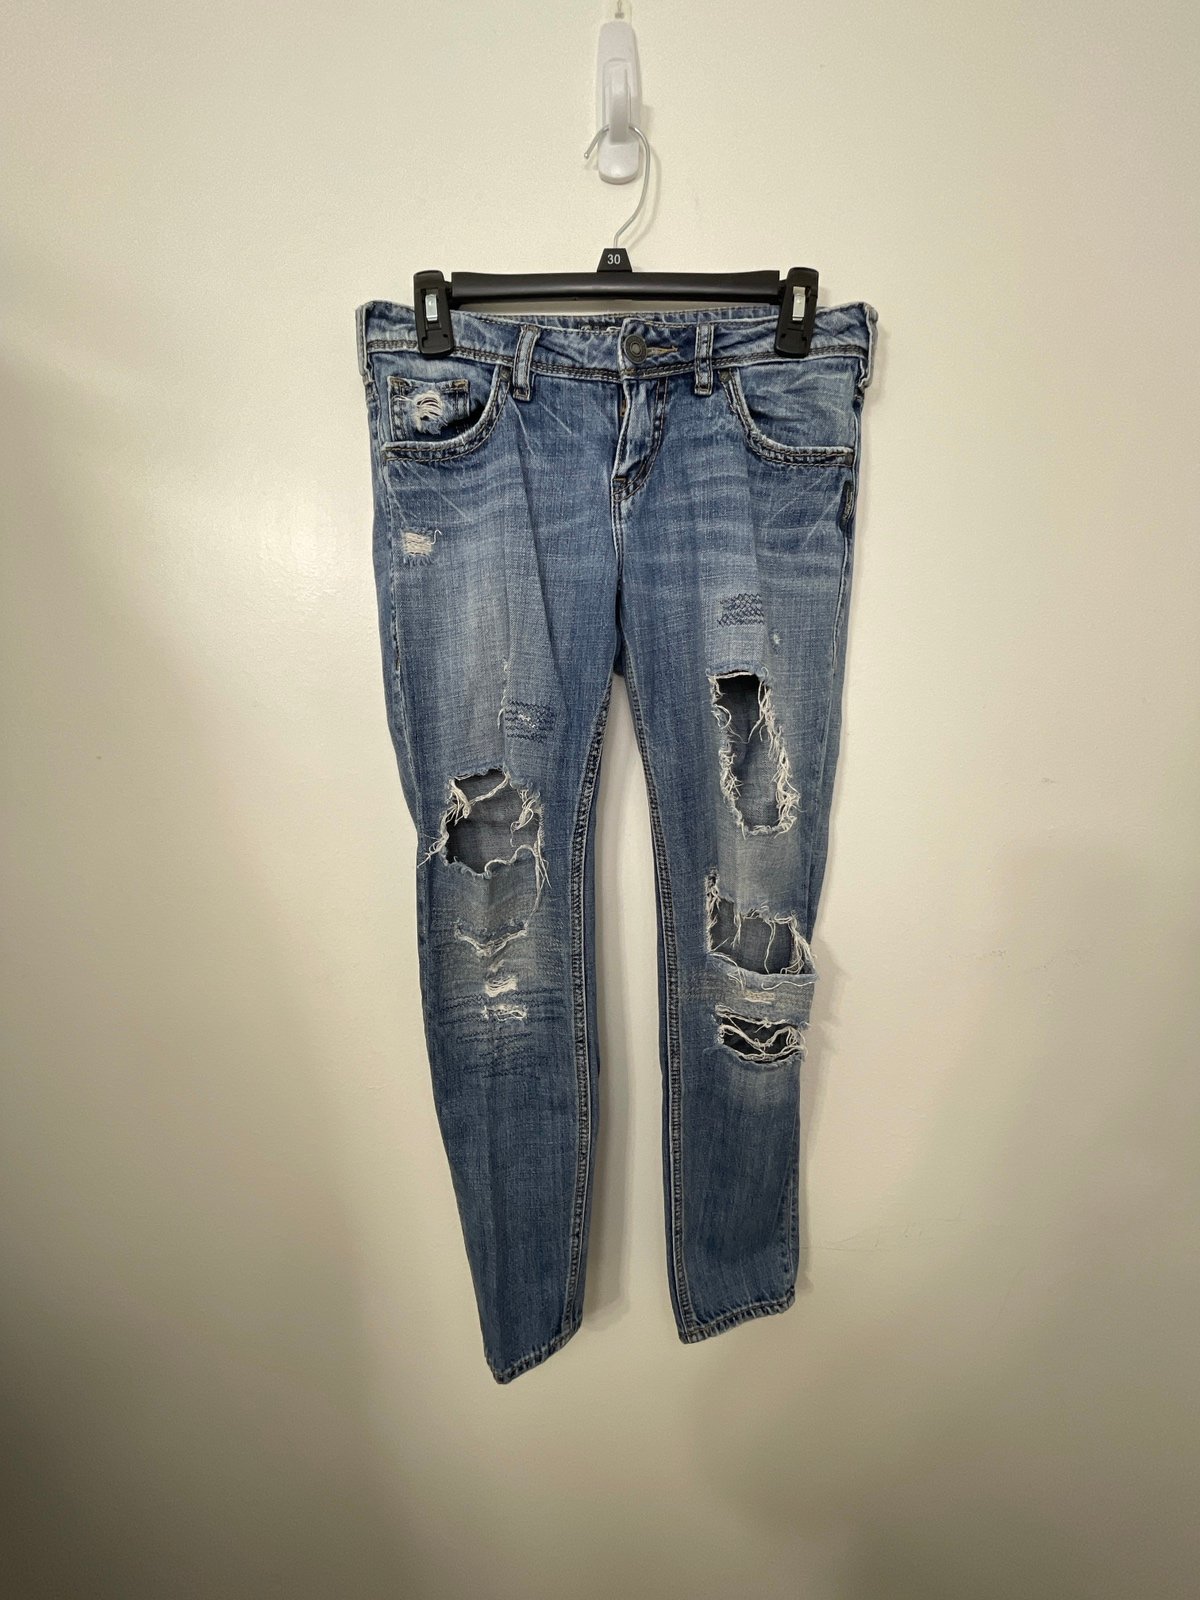 Cheap Lightly Used Light Blue Silver Boyfriend Women’s Jeans - Petite W25/L26 lr5SpnAVU New Style